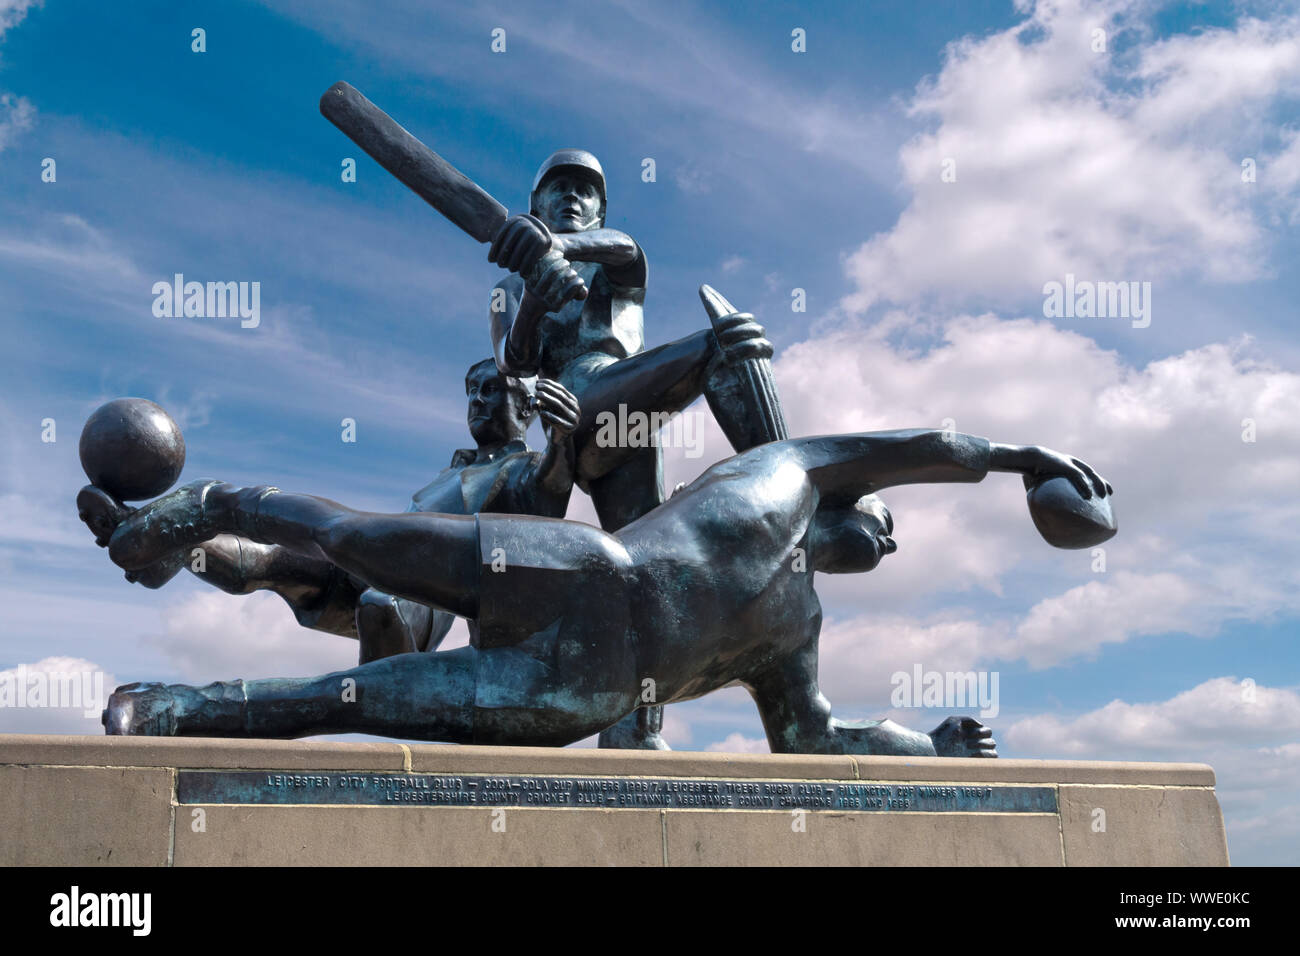 Centro città successi sportivi di una scultura in bronzo di Martin Williams che celebra le vittorie di Leicester di rugby, cricket e squadre di calcio nel 1996/1997. Foto Stock